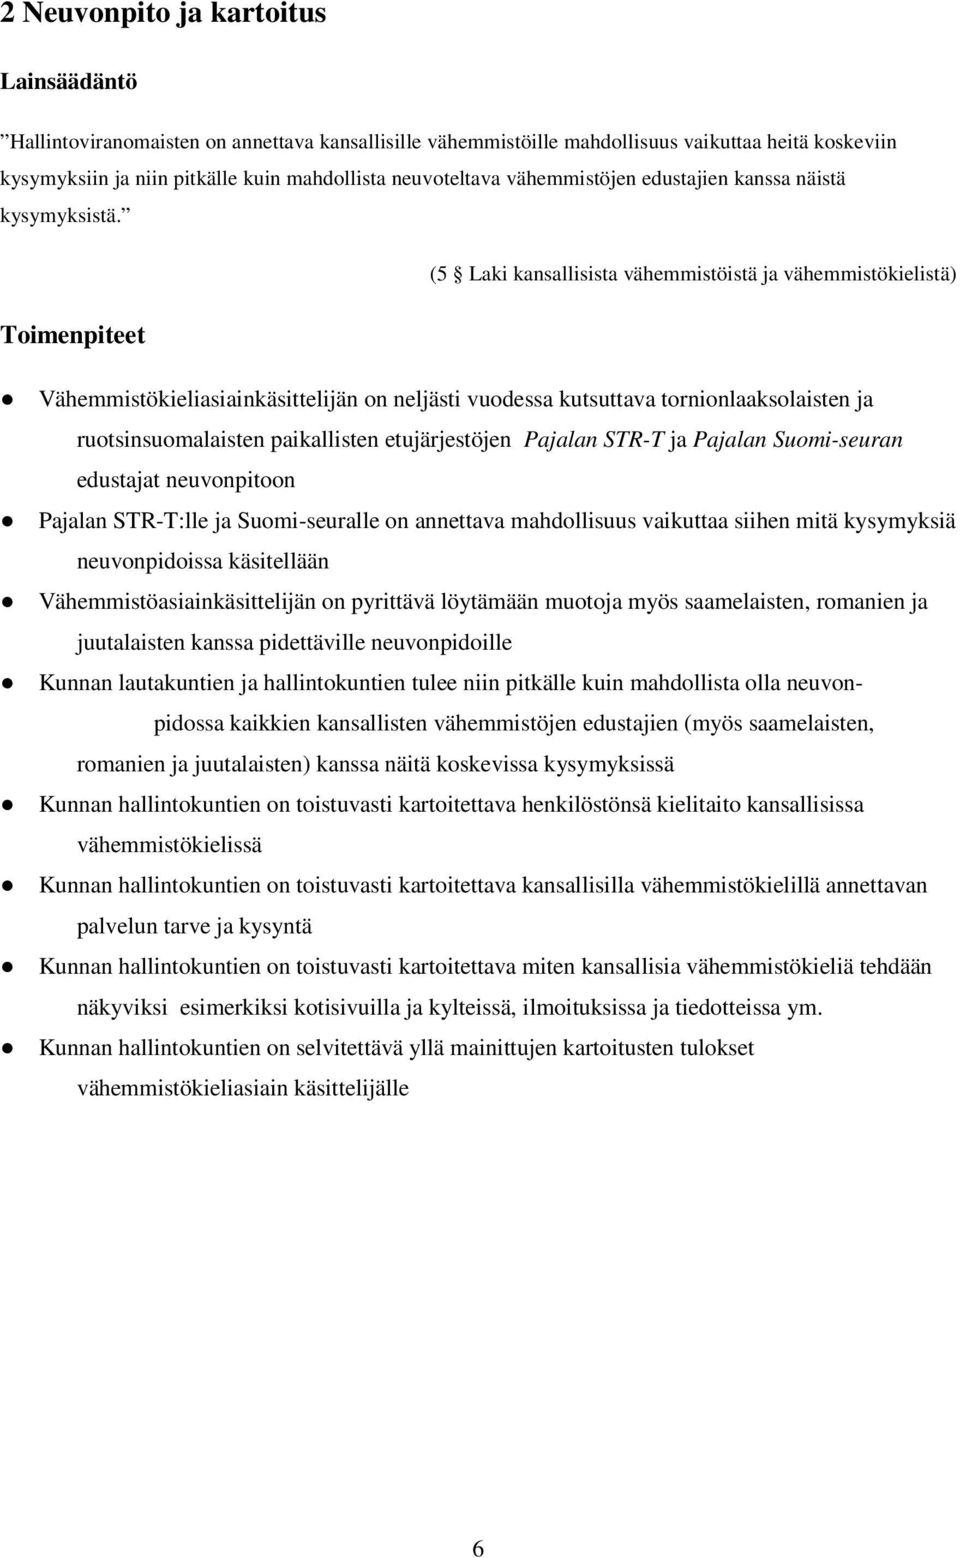 (5 Laki kansallisista vähemmistöistä ja vähemmistökielistä) Toimenpiteet Vähemmistökieliasiainkäsittelijän on neljästi vuodessa kutsuttava tornionlaaksolaisten ja ruotsinsuomalaisten paikallisten